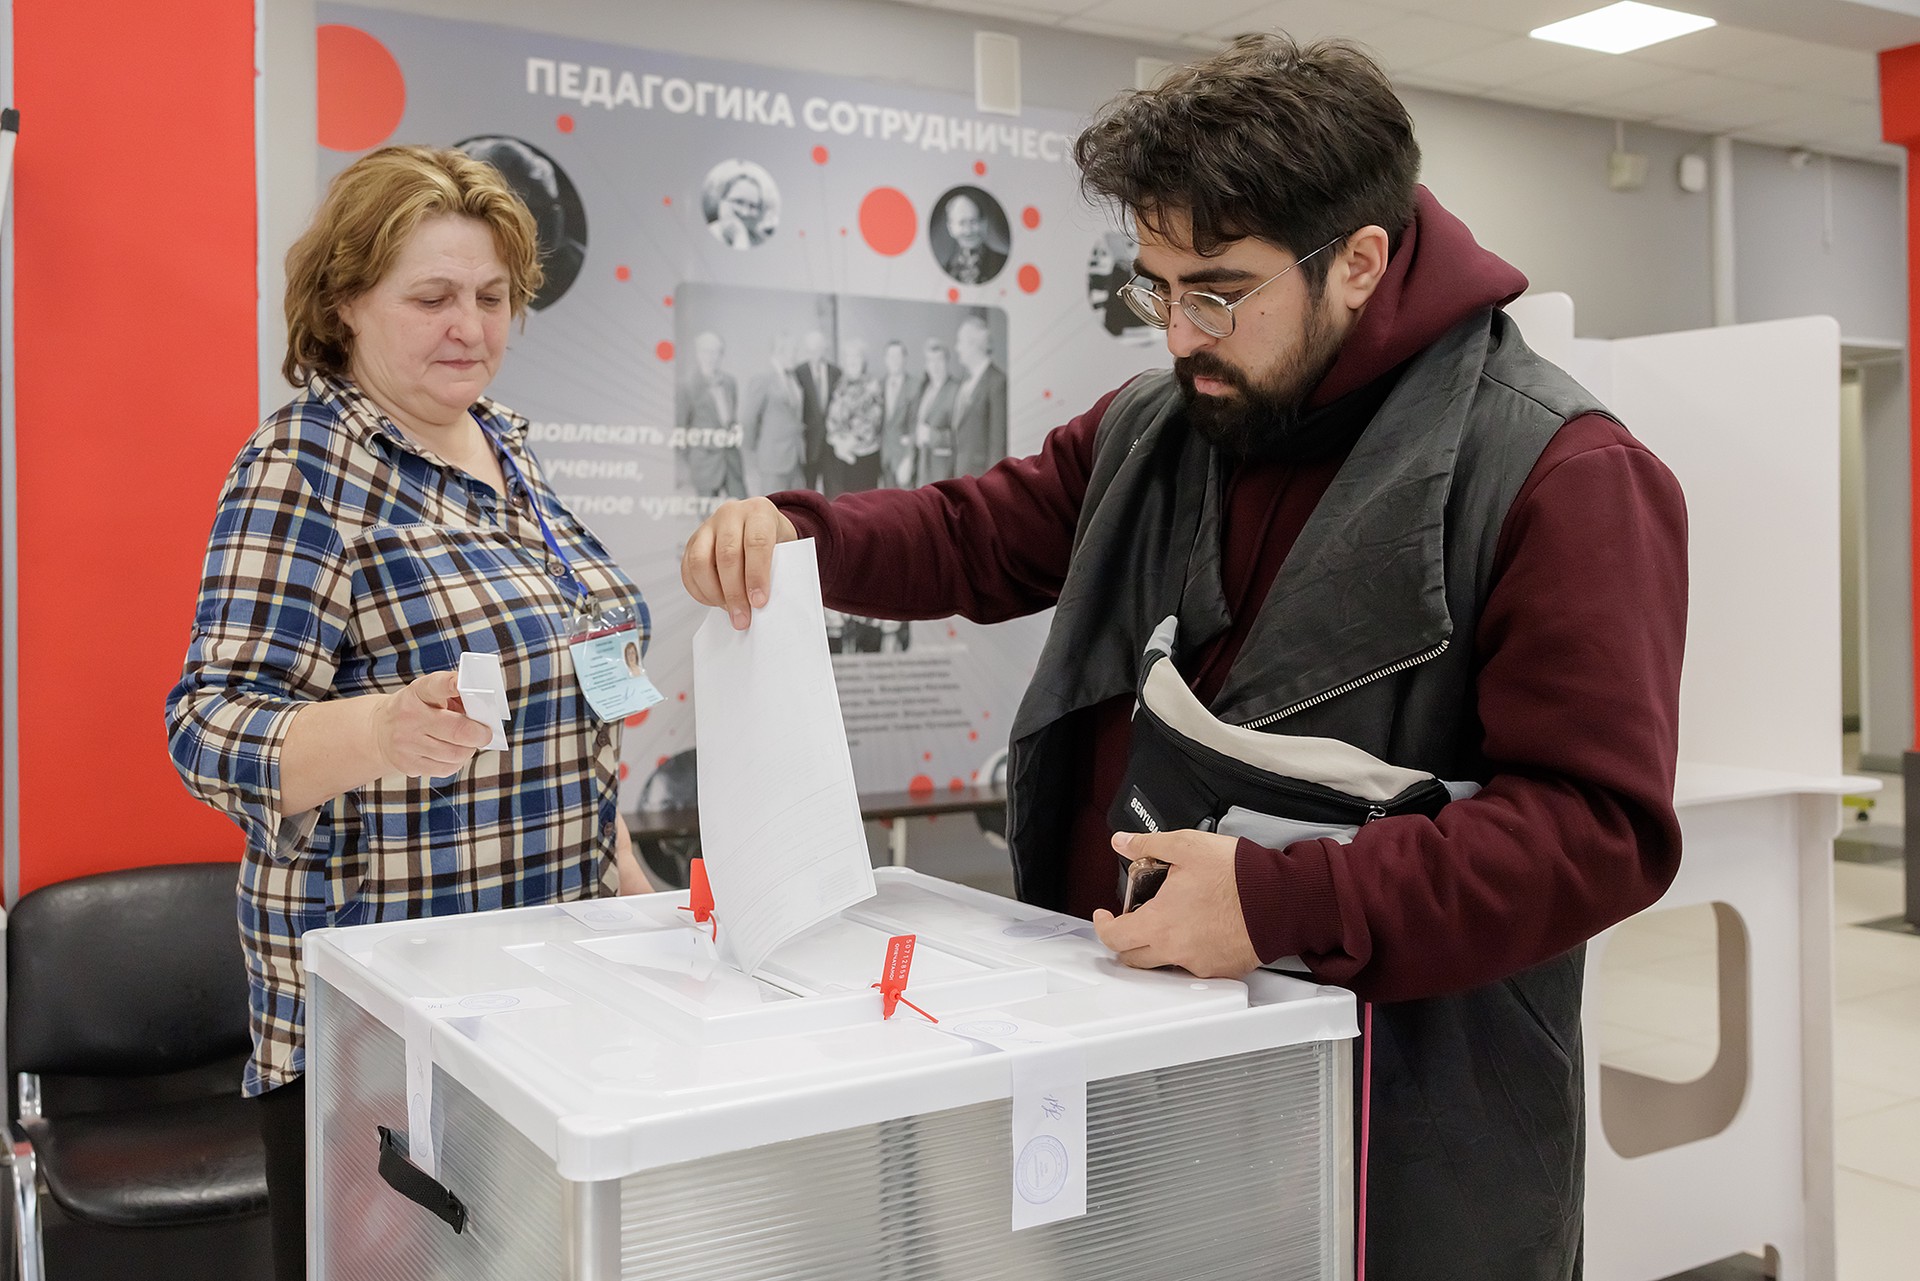 Явка на выборах президента России превысила 60%